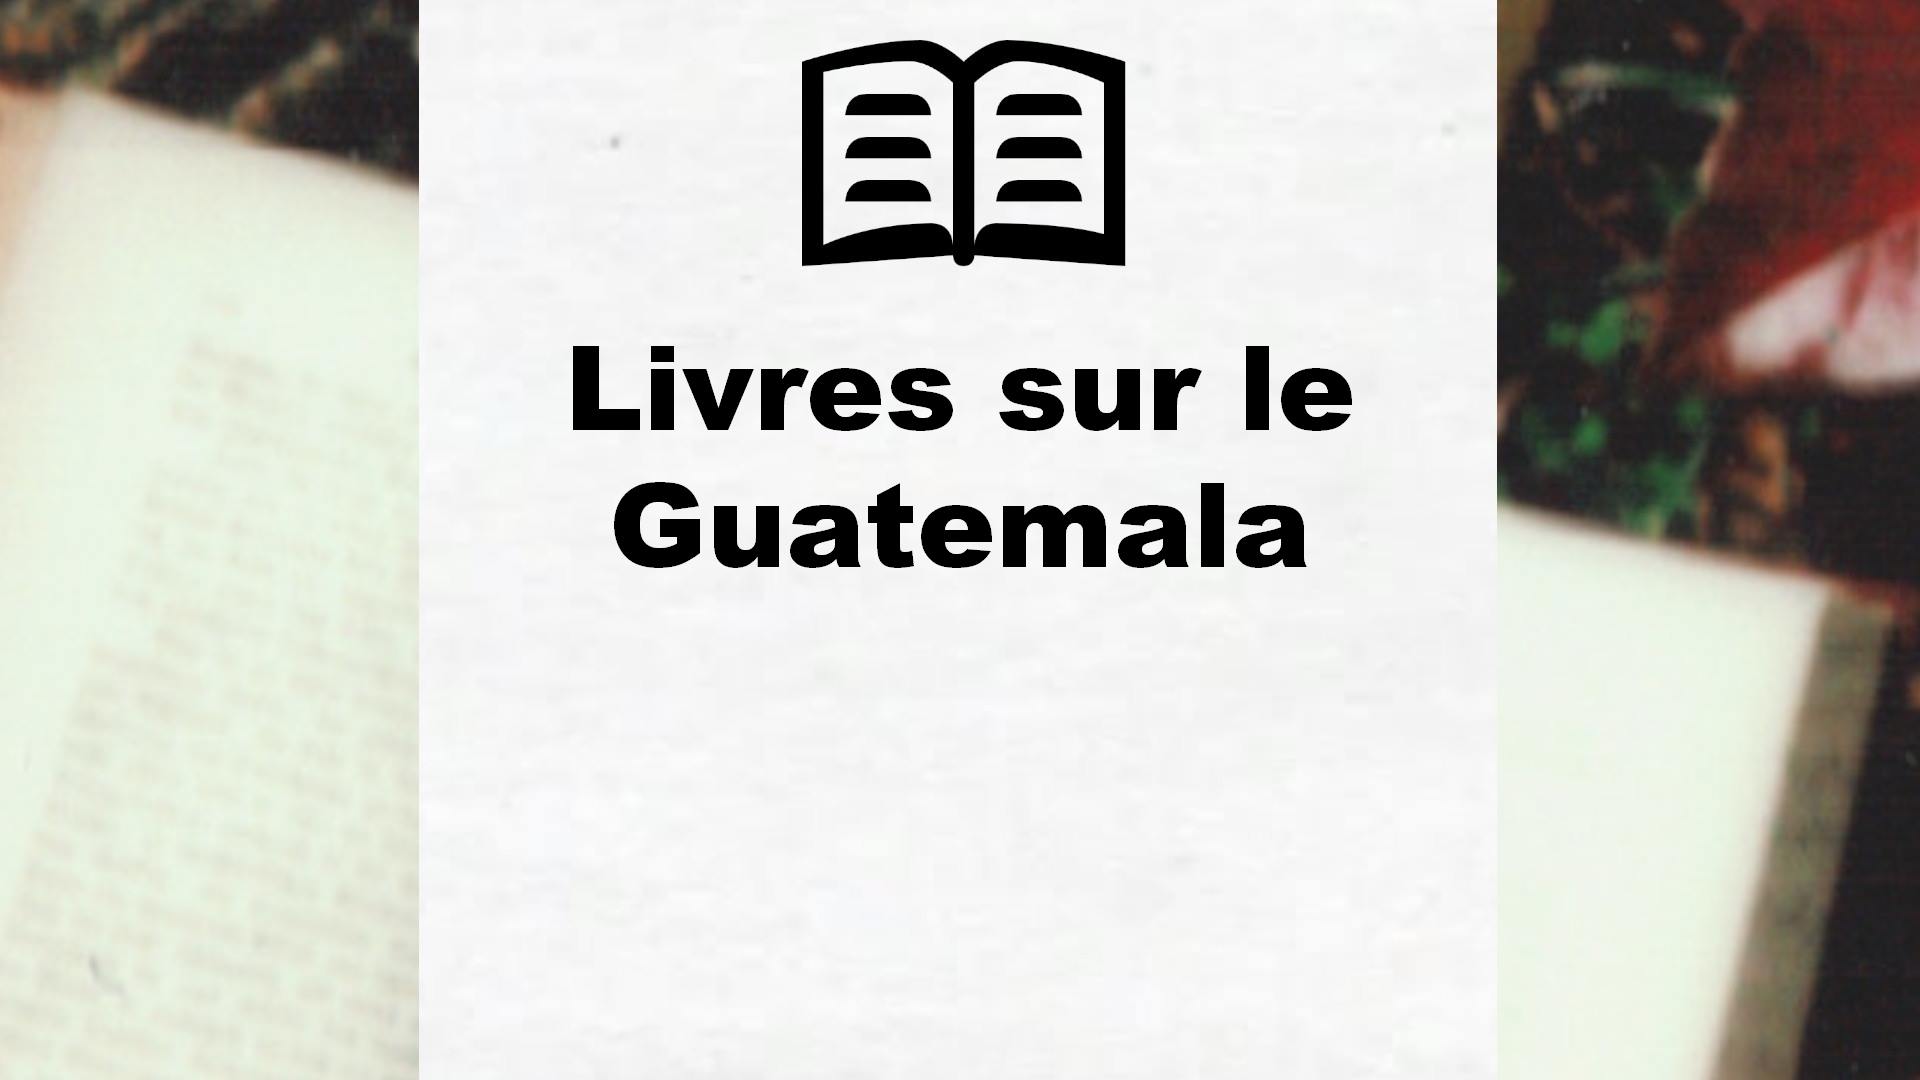 Livres sur le Guatemala